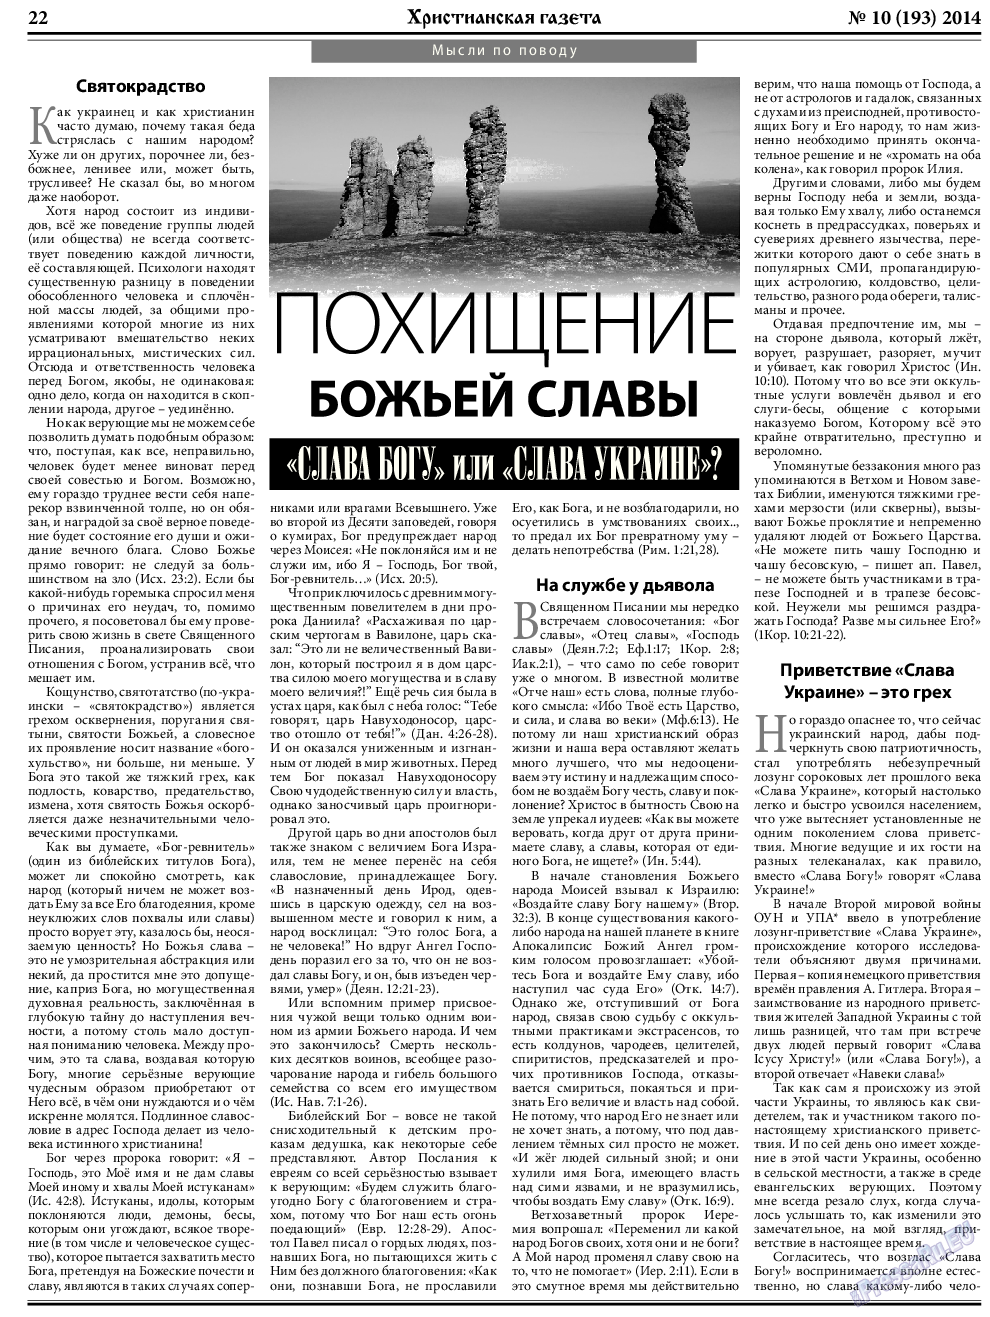 Христианская газета, газета. 2014 №10 стр.30